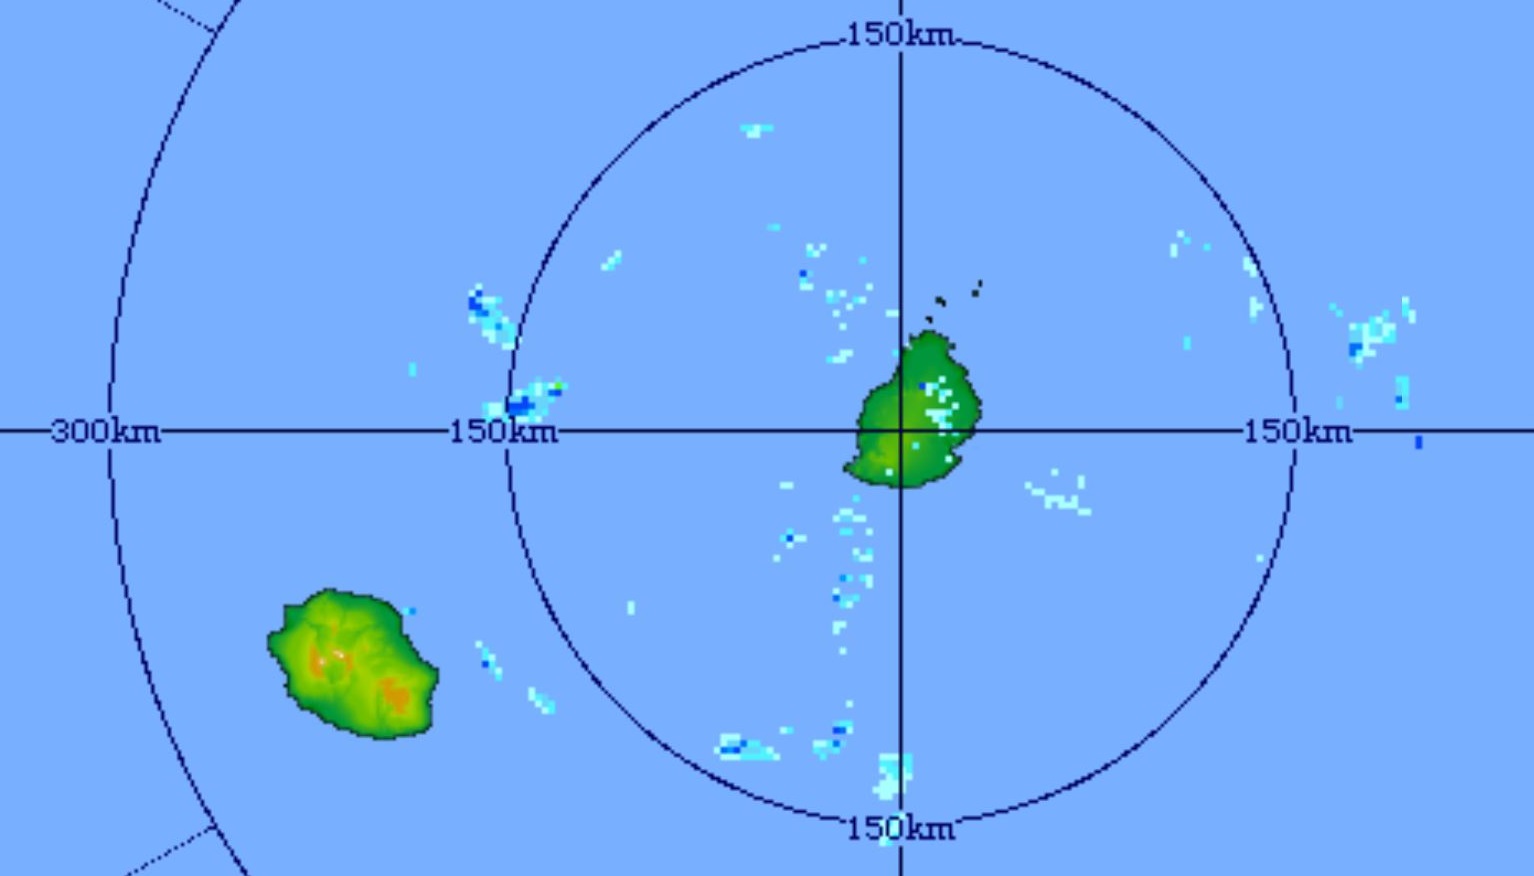 22h41: image du radar de Trou Aux Cerfs centrée sur Maurice et la Réunion. Quelques nuages porteurs d'averses faibles à modérées sont poussés par les vents d'est.